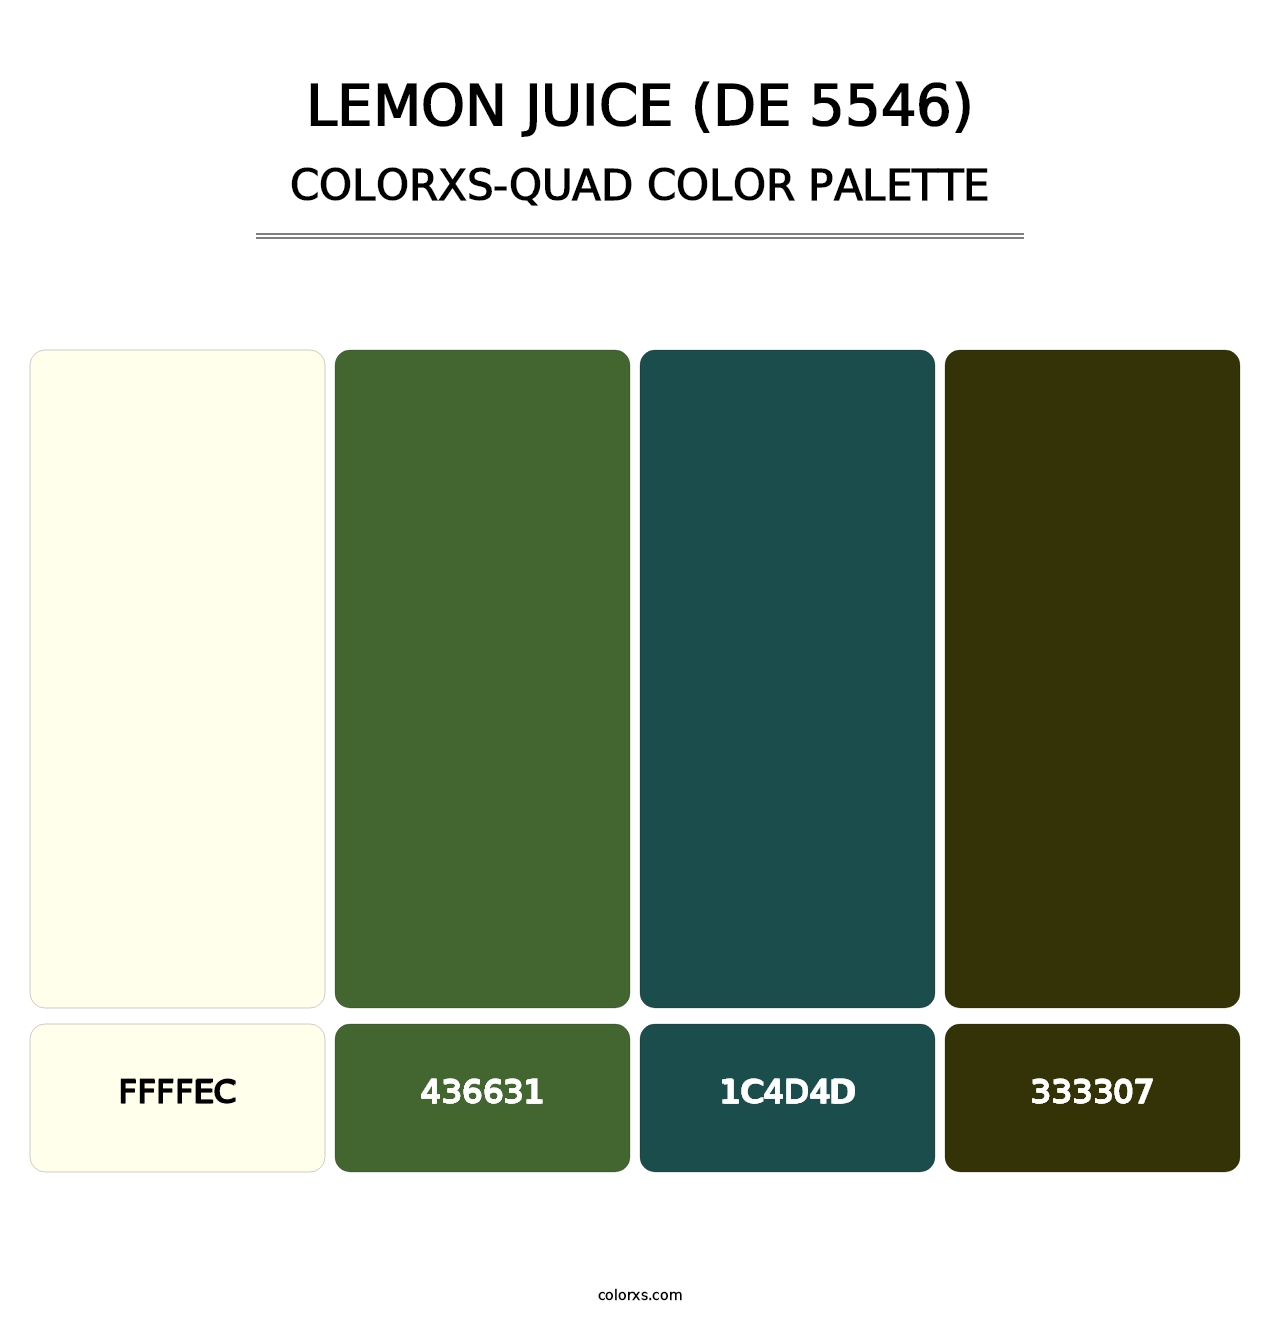 Lemon Juice (DE 5546) - Colorxs Quad Palette